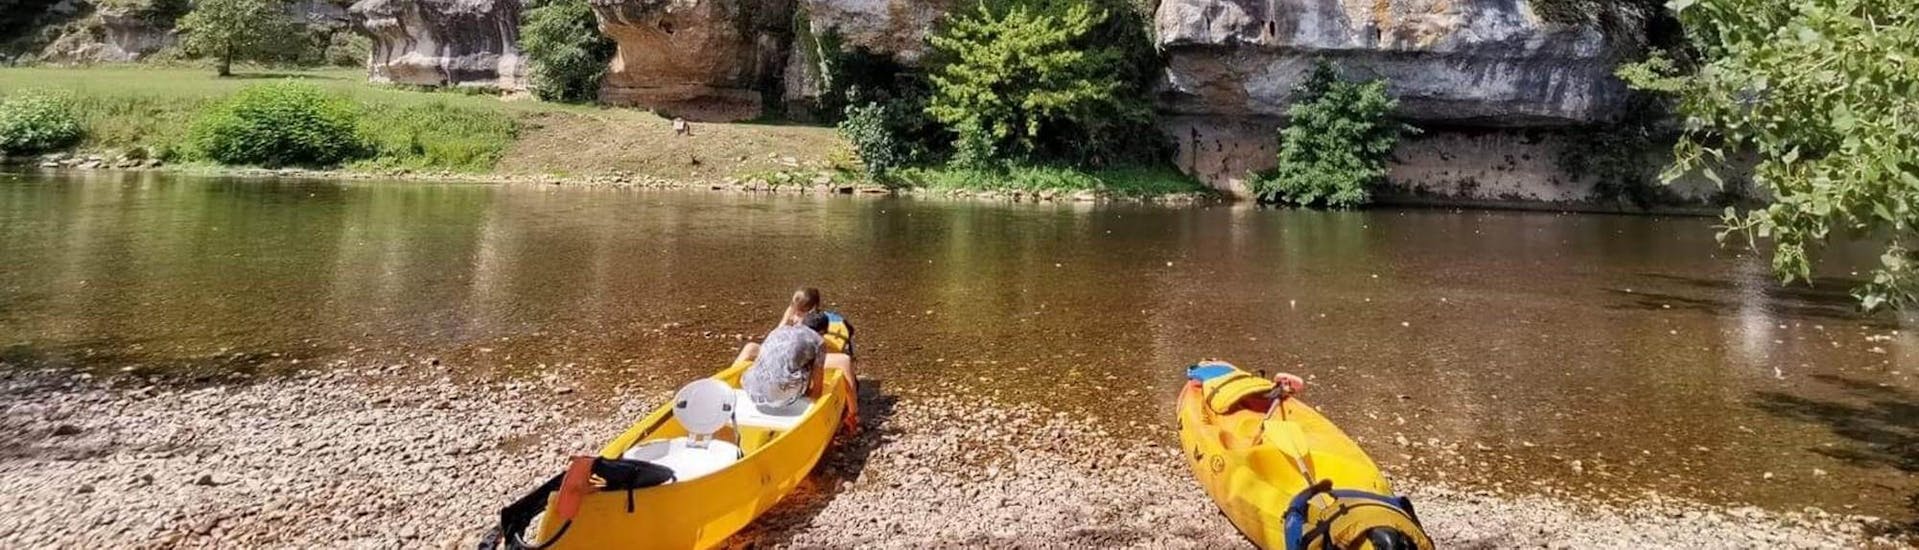 Een gezin heeft een pauze naast de rivier de Vézère met de kano tijdens de 12 km lange gezinsuitstap met Canoë Family.